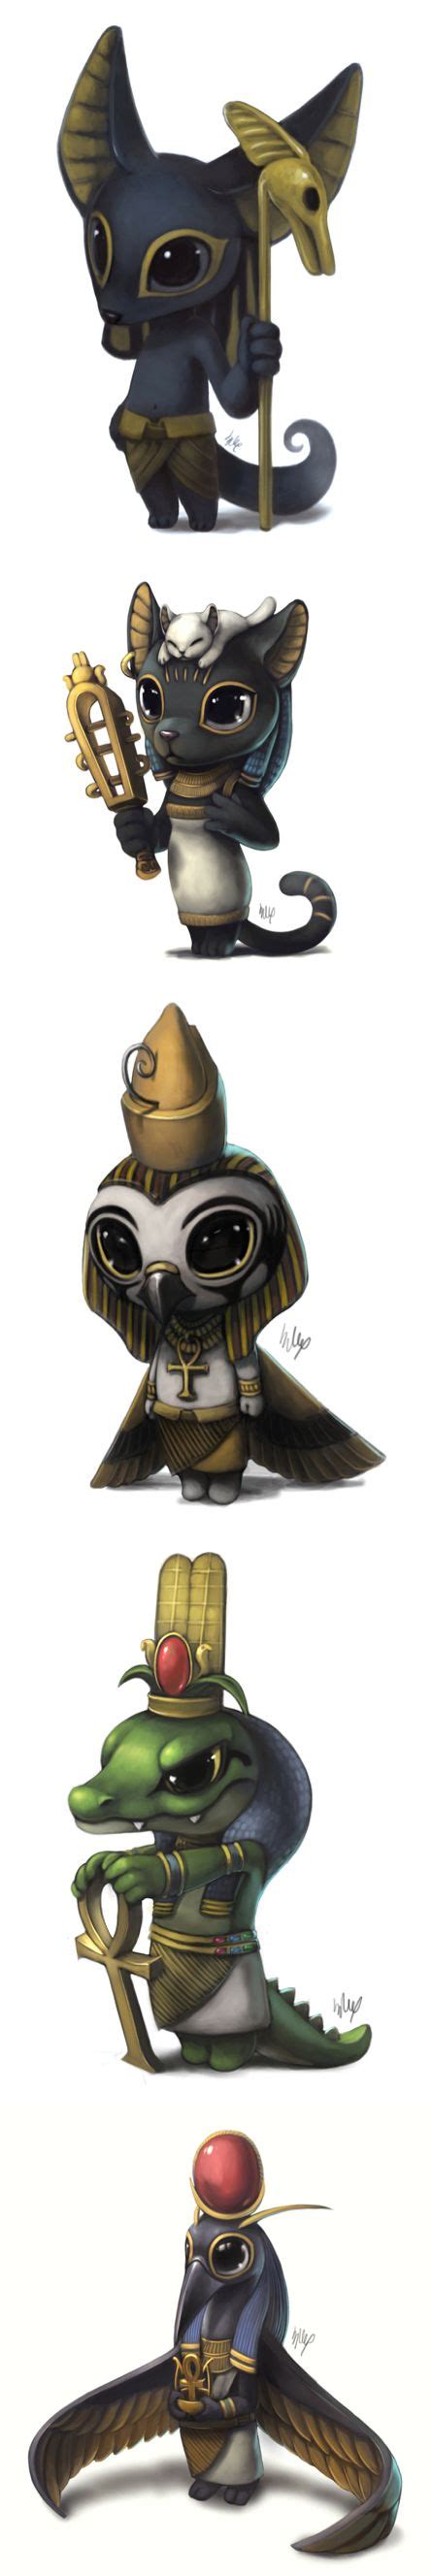 53 Best God Of Egypt Images On Pinterest Concept Art